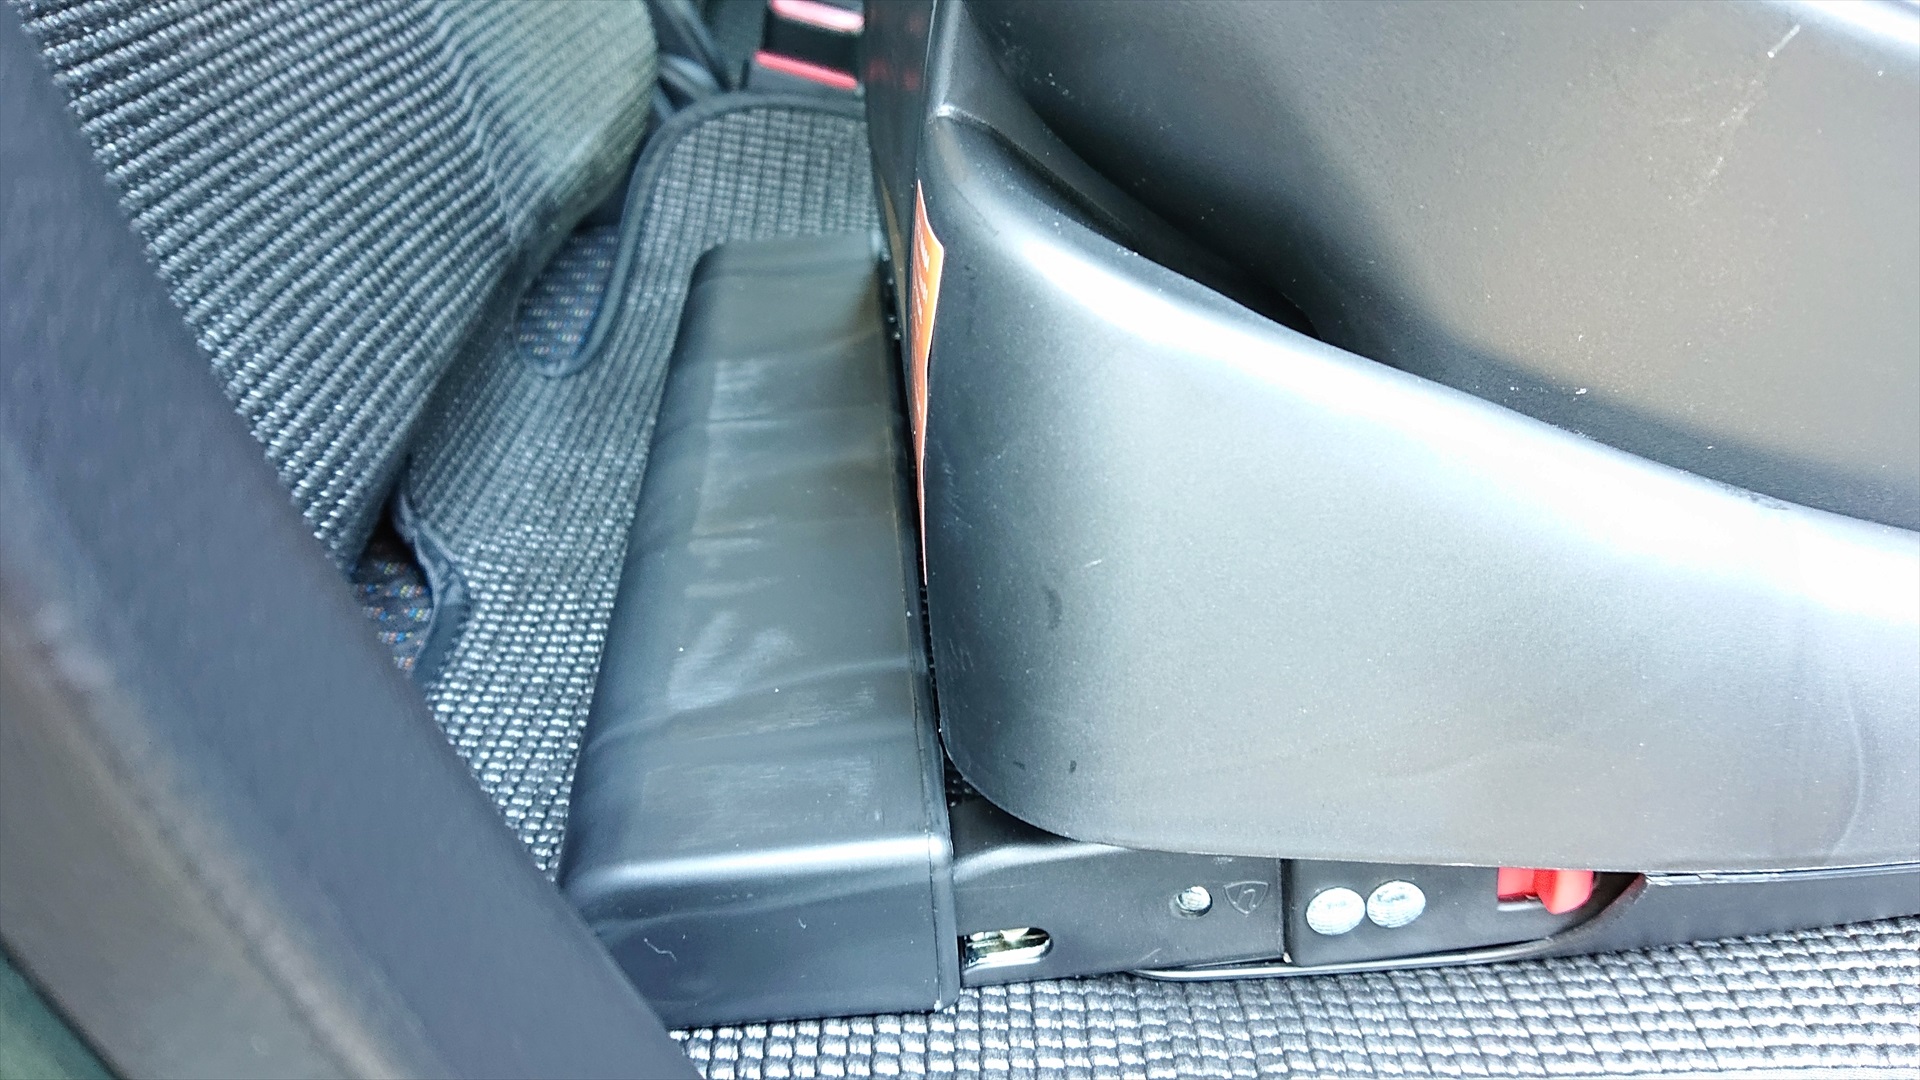 チャイルドシートの座面裏側にはカバーがあって、これをはずすとISOFIXのロック部がでてきます。シートベルト式にも対応のため、シートベルトで固定する場合はこのカバーをつけたままにします。